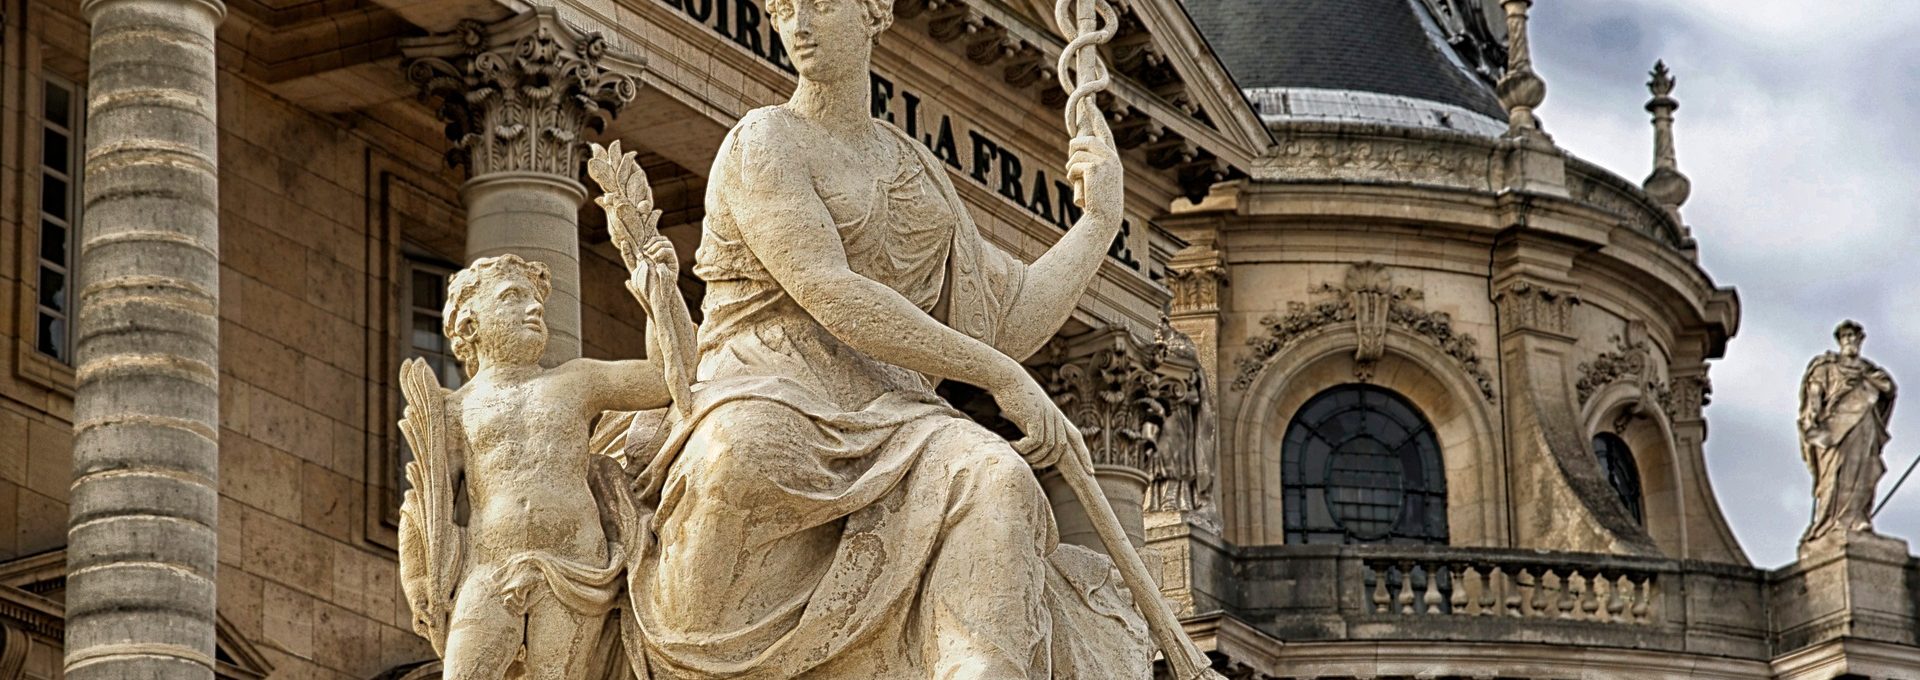 Estátuas do Palácio de Versalhes